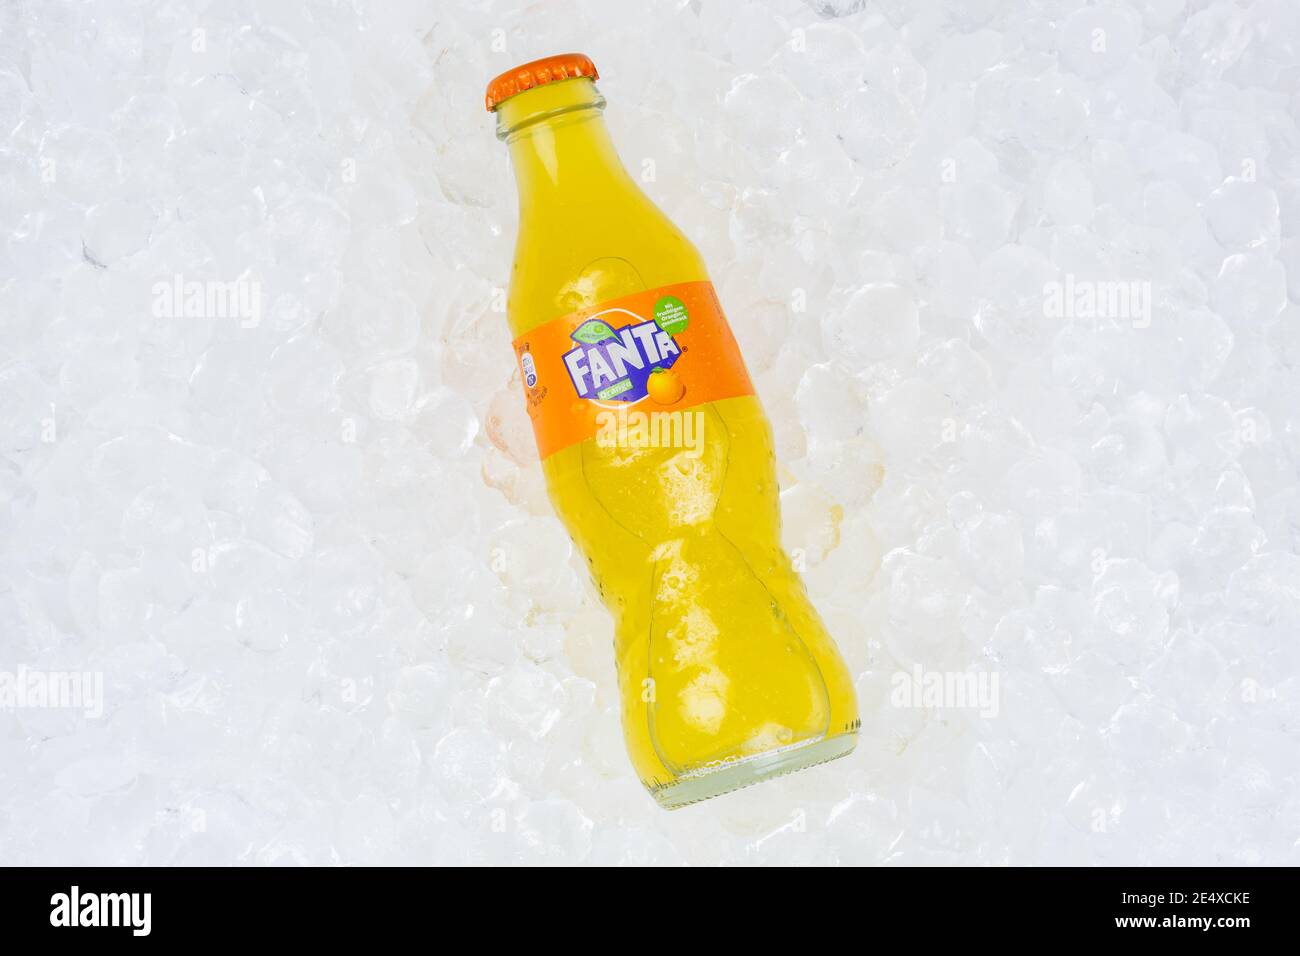 Stoccarda, Germania - 17 gennaio 2021: Cubetti di ghiaccio in bottiglia di limonata d'arancia Fanta a Stoccarda in Germania. Foto Stock